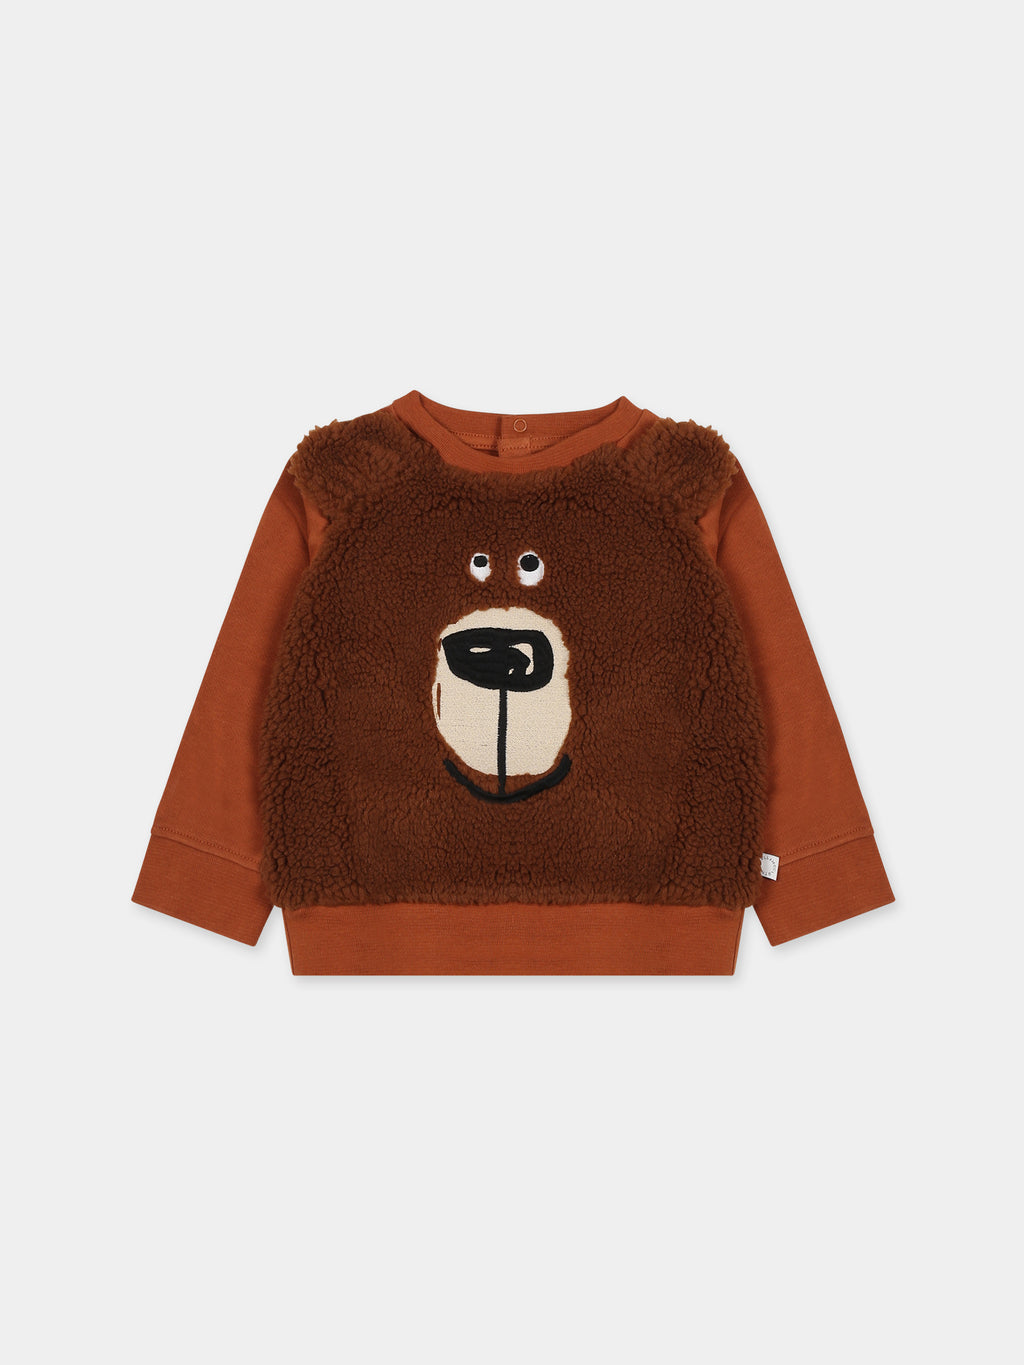 Sweat-shirt marron pour bébé garçon avec ours